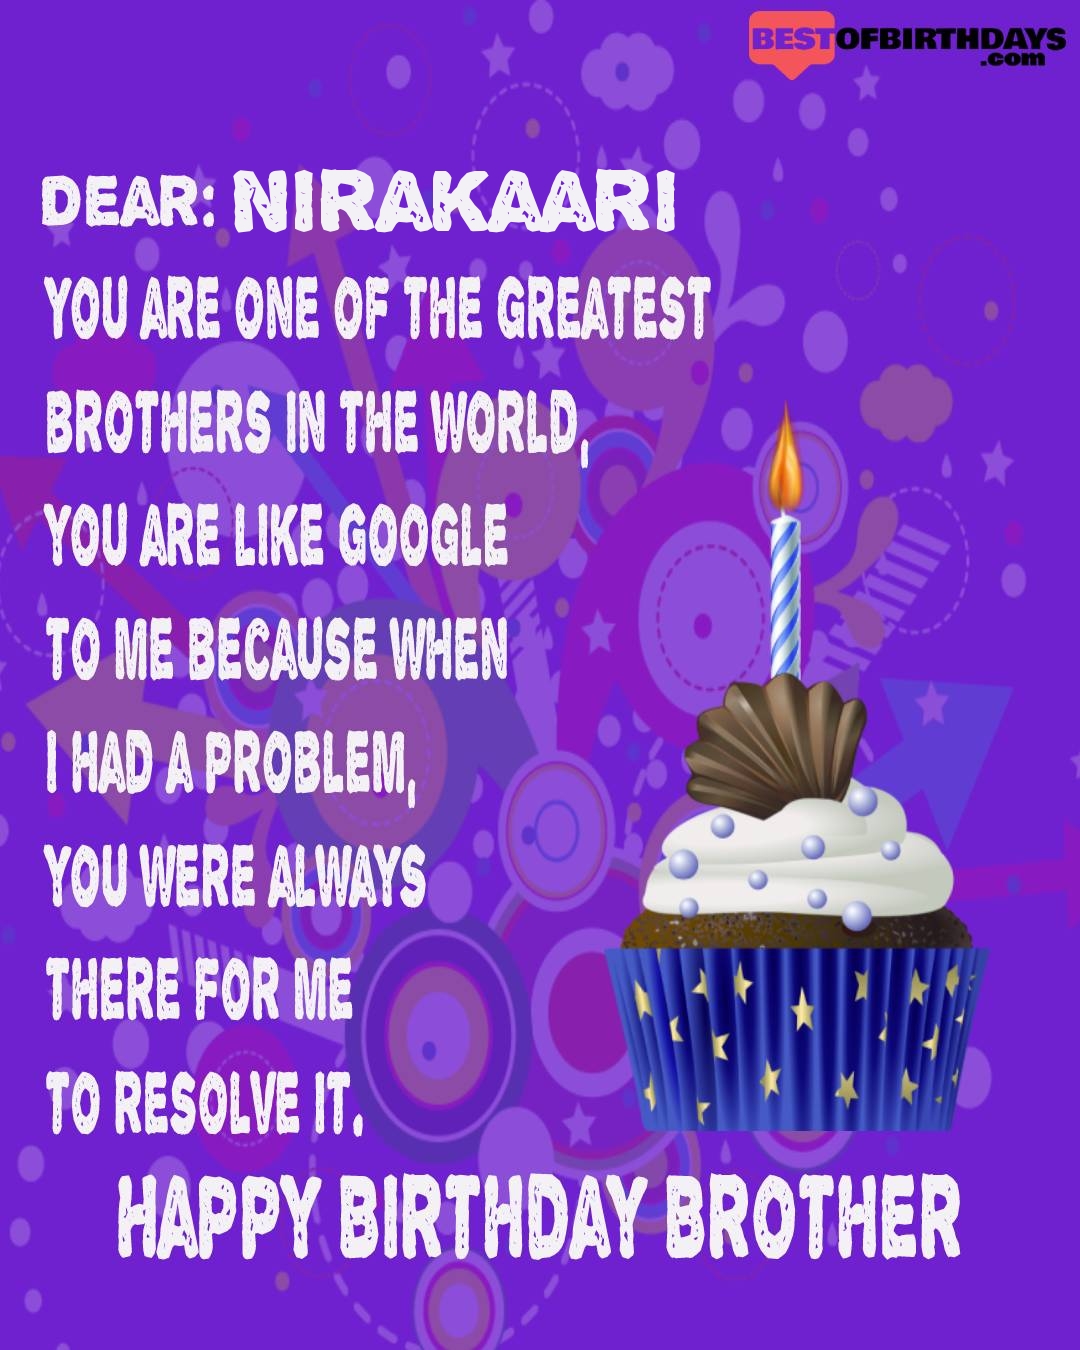 Happy birthday nirakaari bhai brother bro